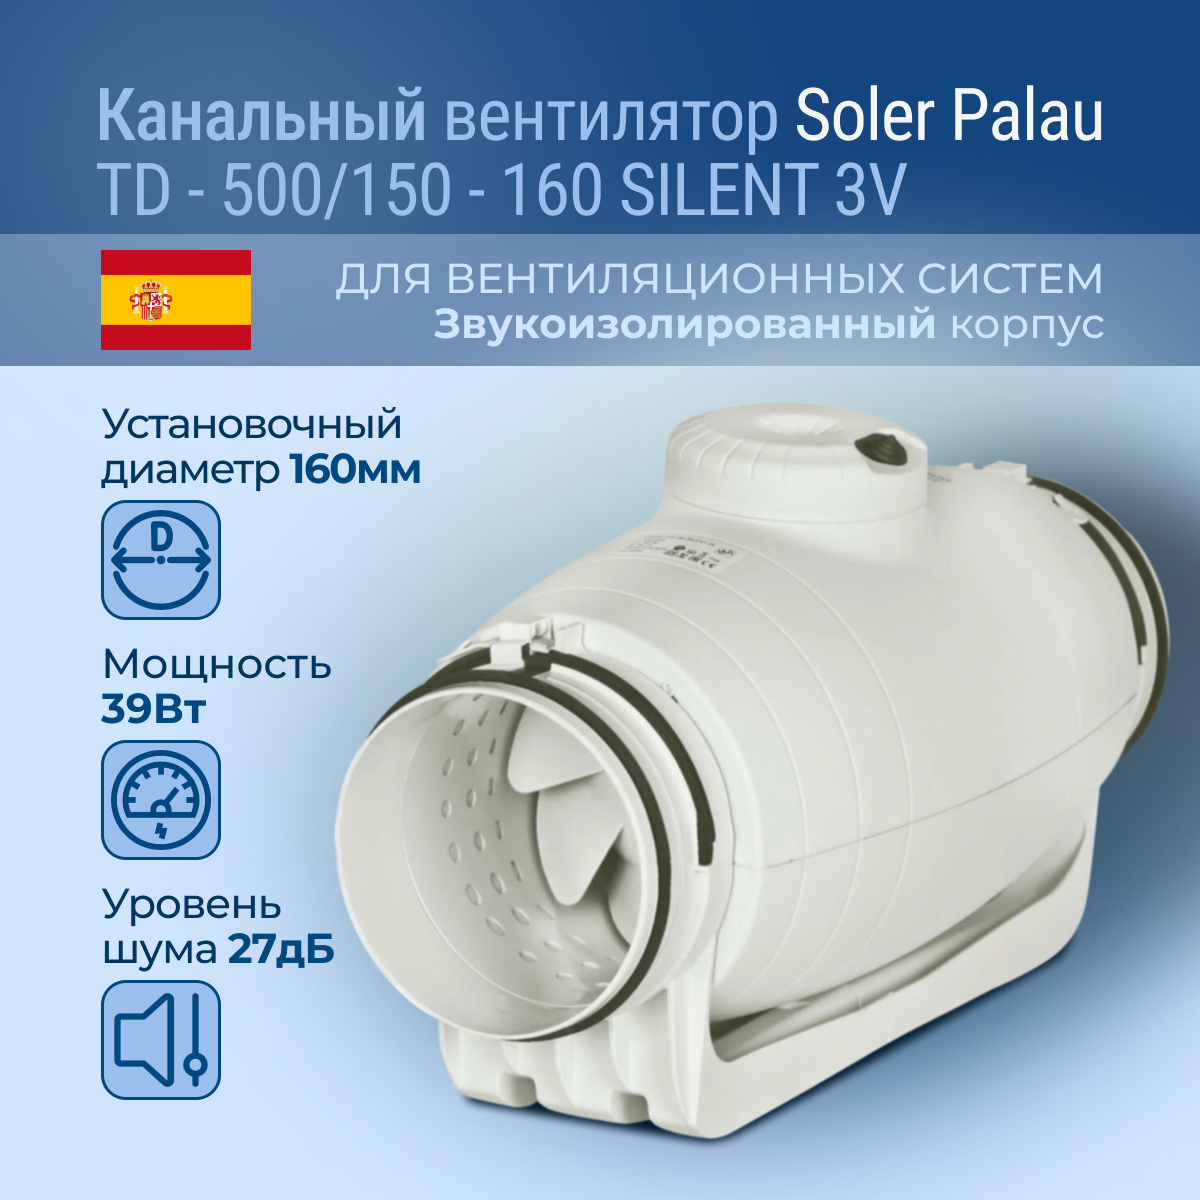 Канальный вентилятор Soler Palau TD-500/150-160 Silent 3V